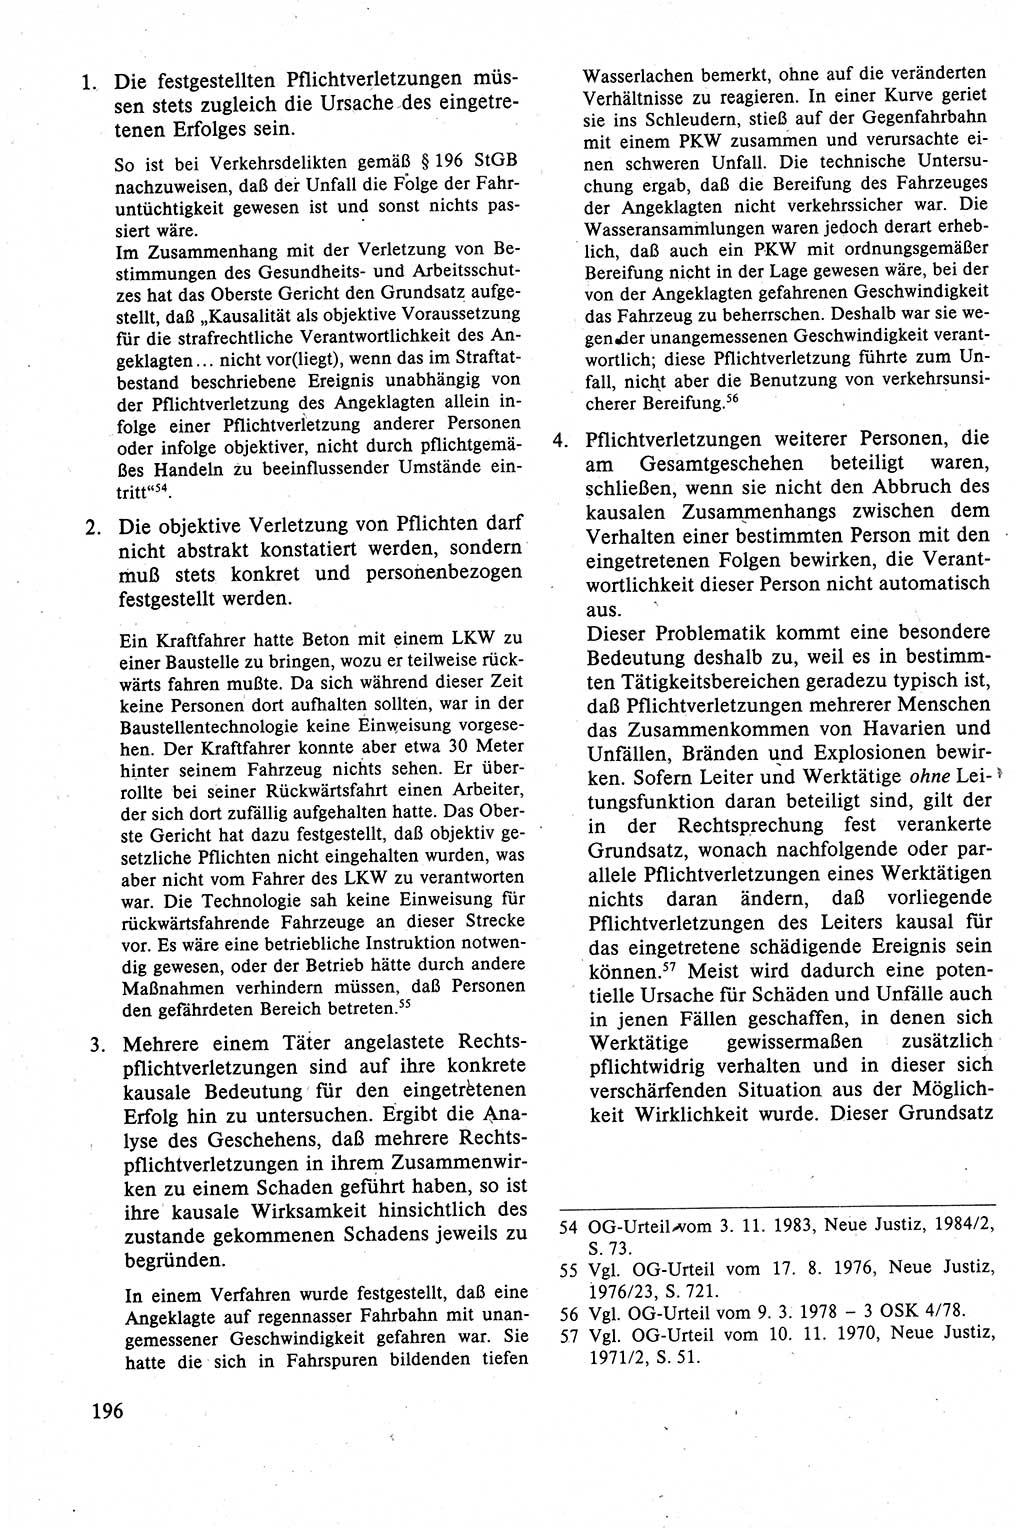 Strafrecht der DDR (Deutsche Demokratische Republik), Lehrbuch 1988, Seite 196 (Strafr. DDR Lb. 1988, S. 196)